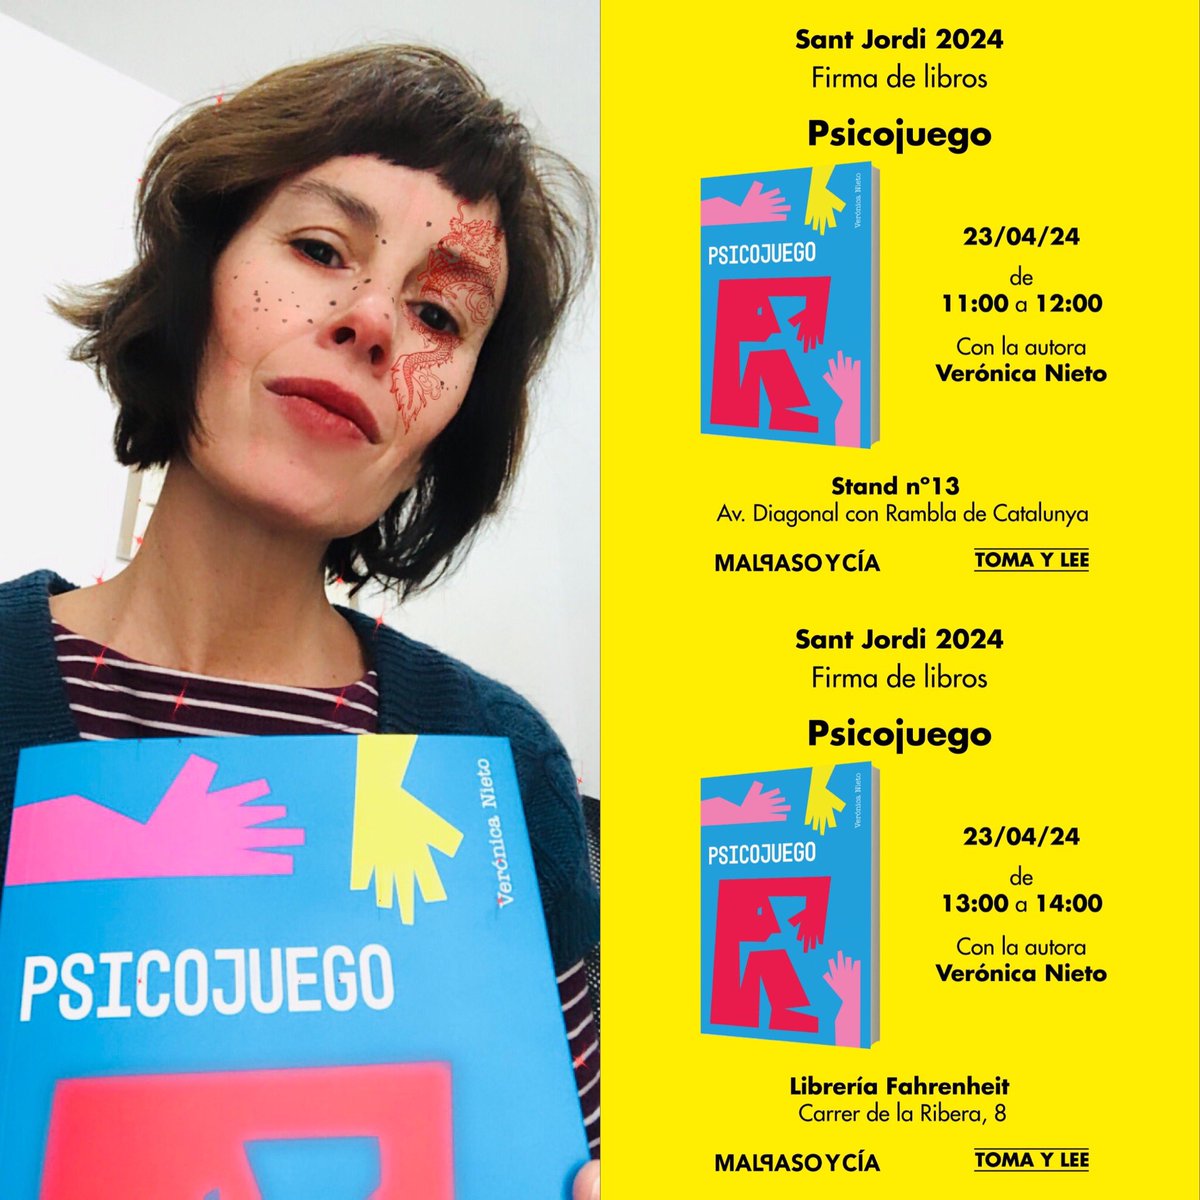 Se viene #SantJordi2024 y estaré con boli en mano en stand de @MalpasoyCia de 11-12 h y en @libreria_f451 de 13-14 h ¡Nos vemos! #psicojuego